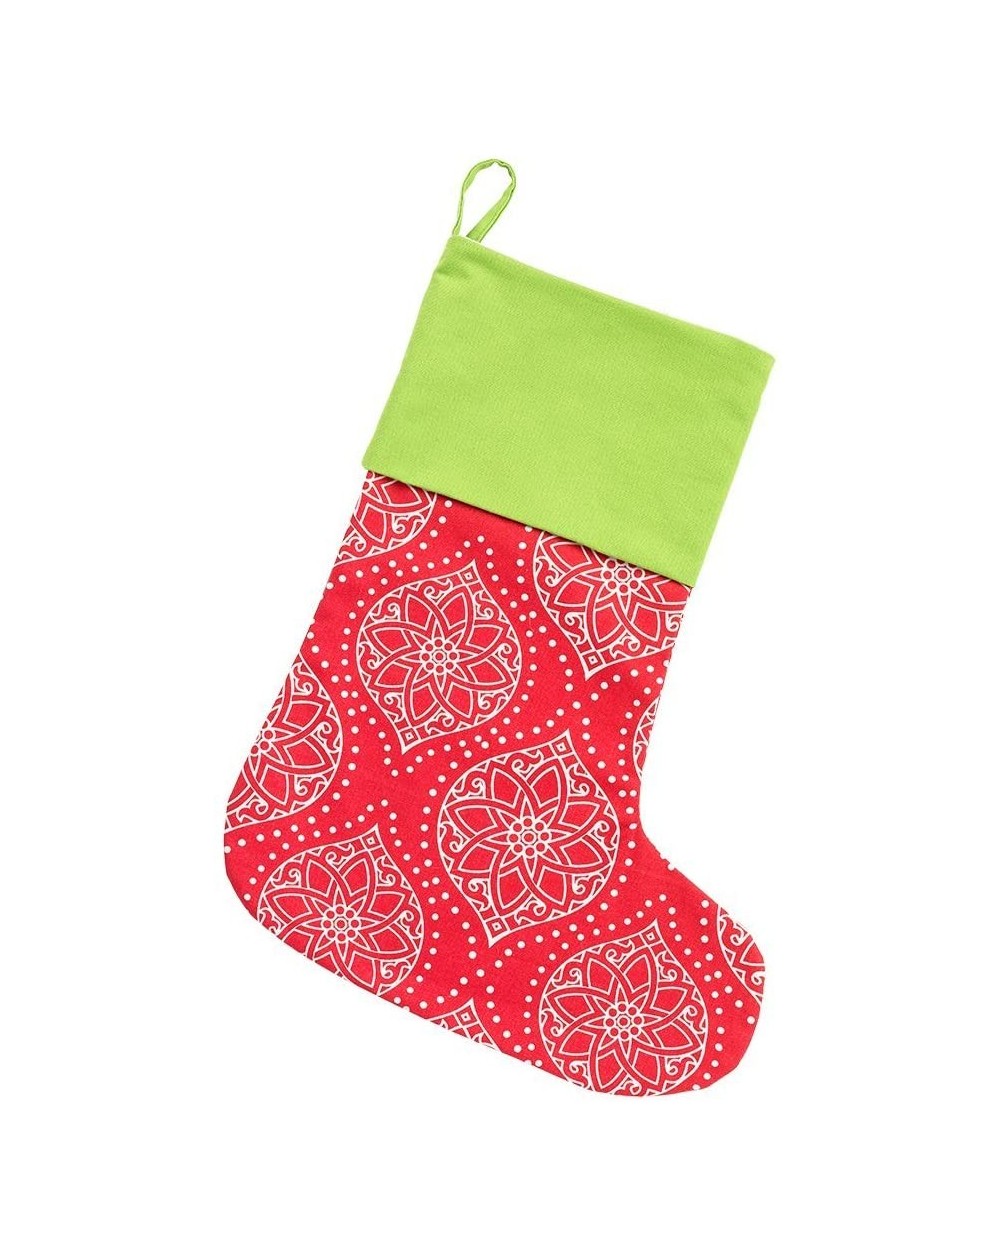 Stockings & Holders Personalized Christmas Stocking in Noel - Noel - C6187DTK4HU $24.07